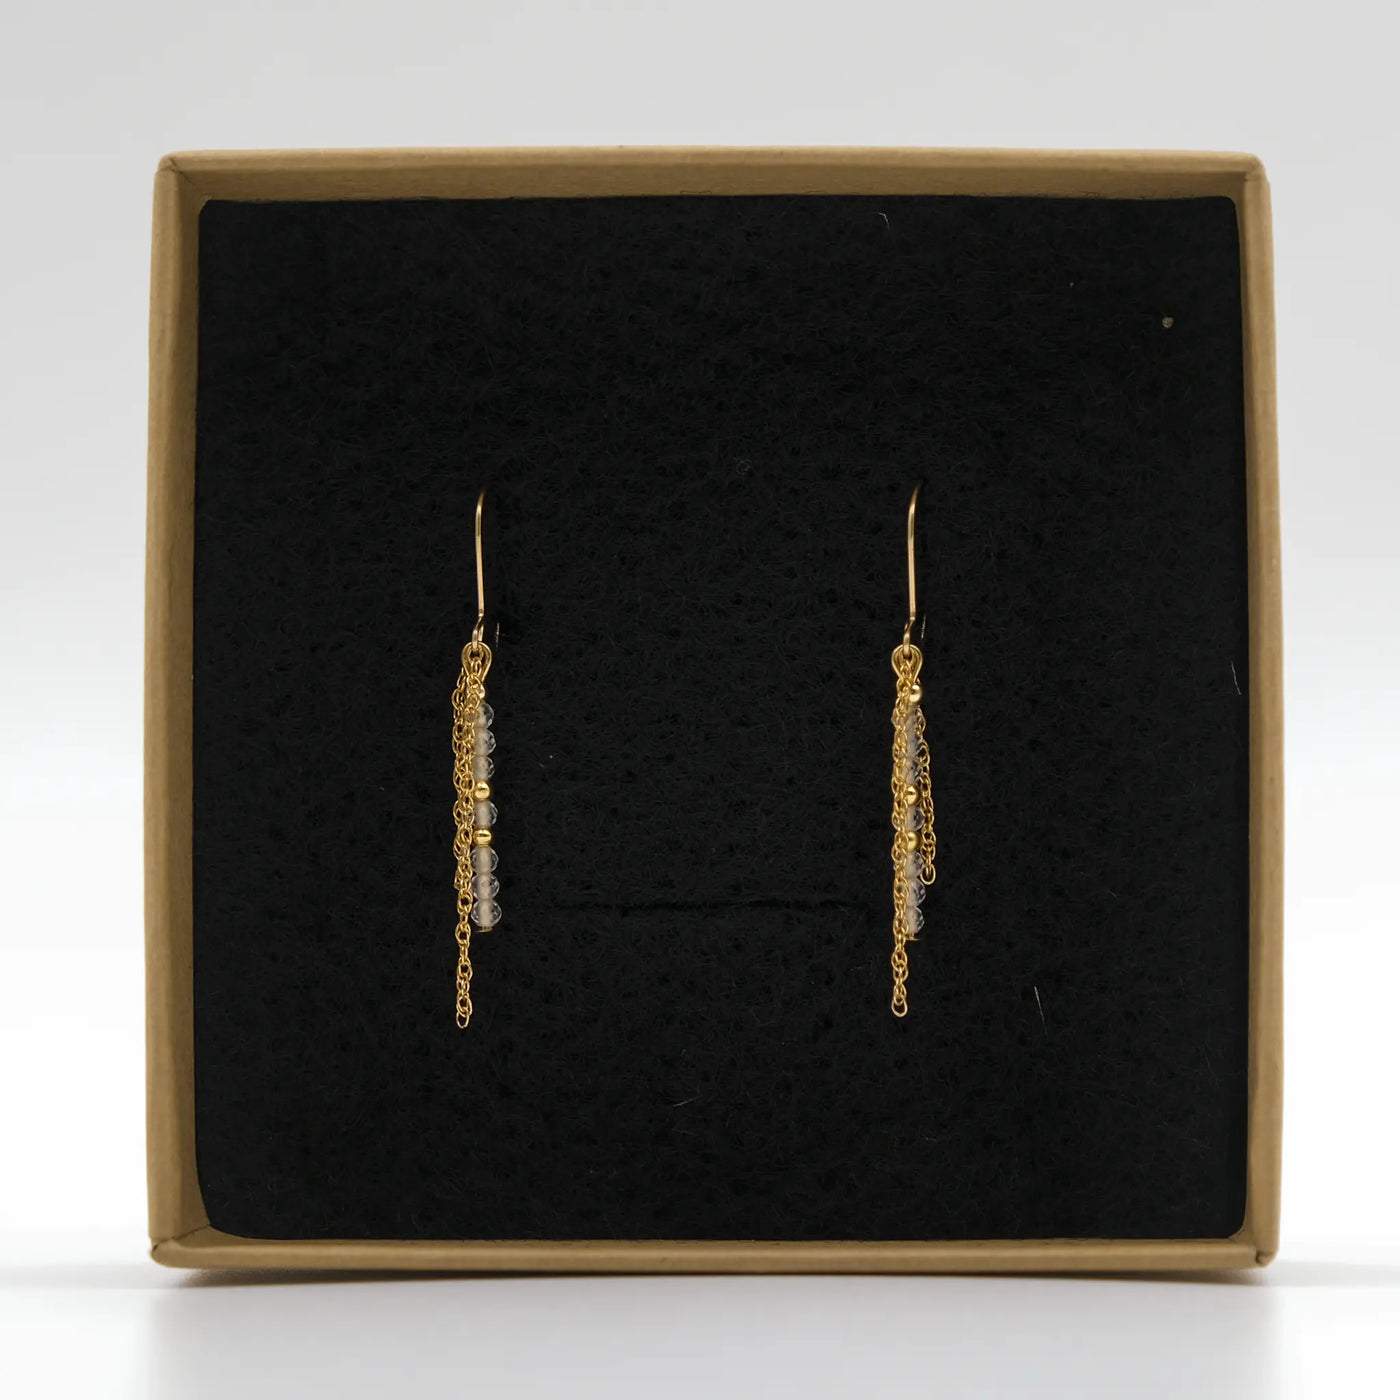 Edelsteinohrringe mit 2 Millimeter großen, facettierten Citrin Perlen und 14 Karat vergoldeten Perlen. In einer Schmuckschachtel